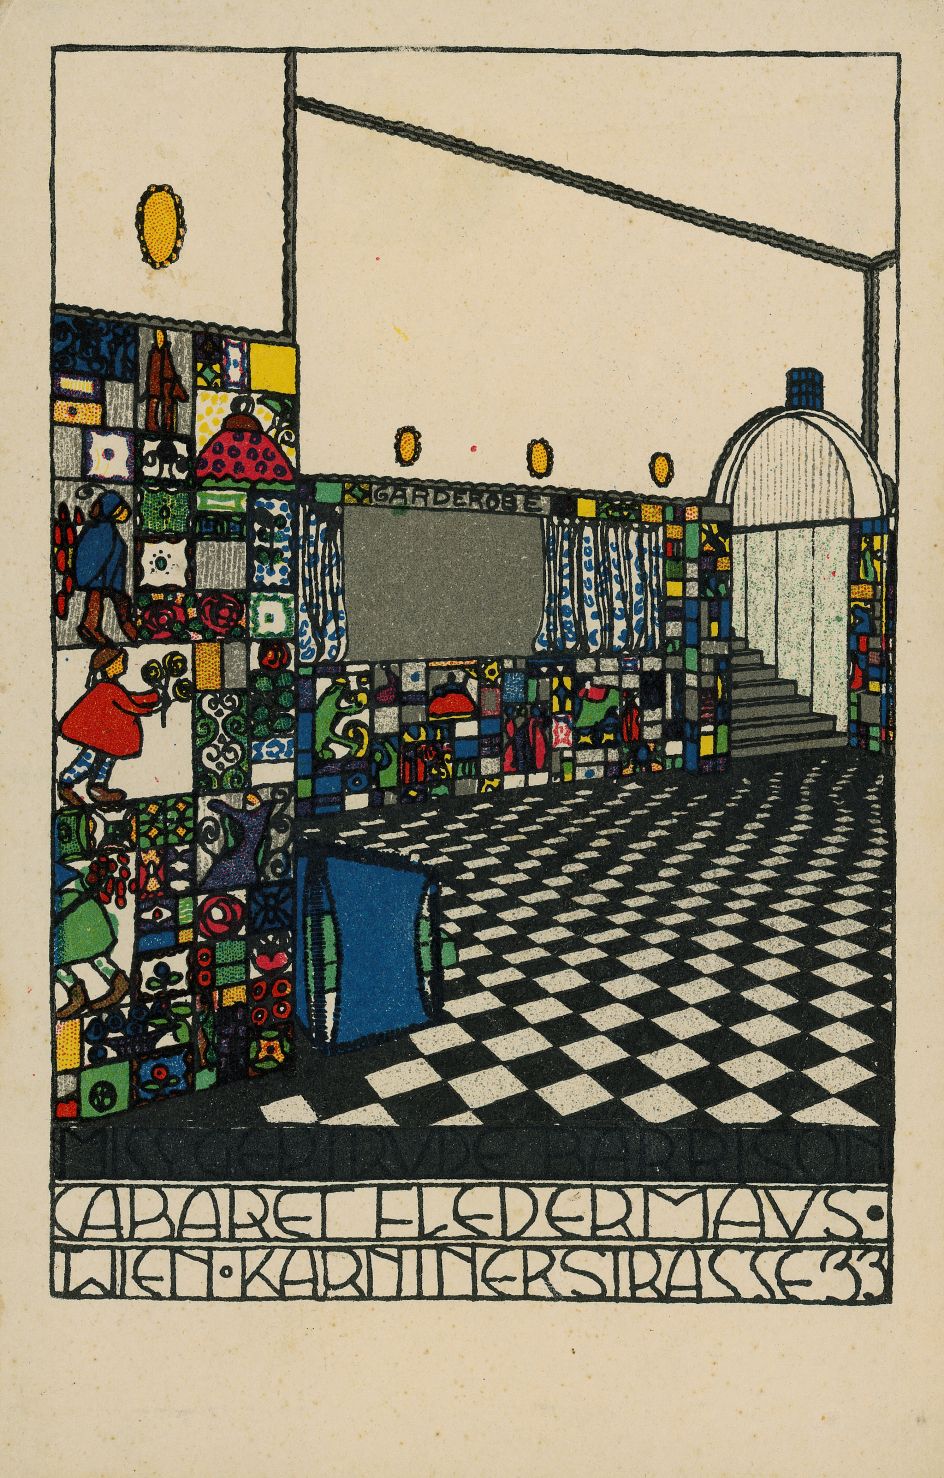 Josef Hoffmann Kabarett Fledermaus Postkarte (Cabaret Fledermaus Postcard), Wiener Werkstätte, Nr. 74., 1907 Lithograph Theatermuseum, Vienna